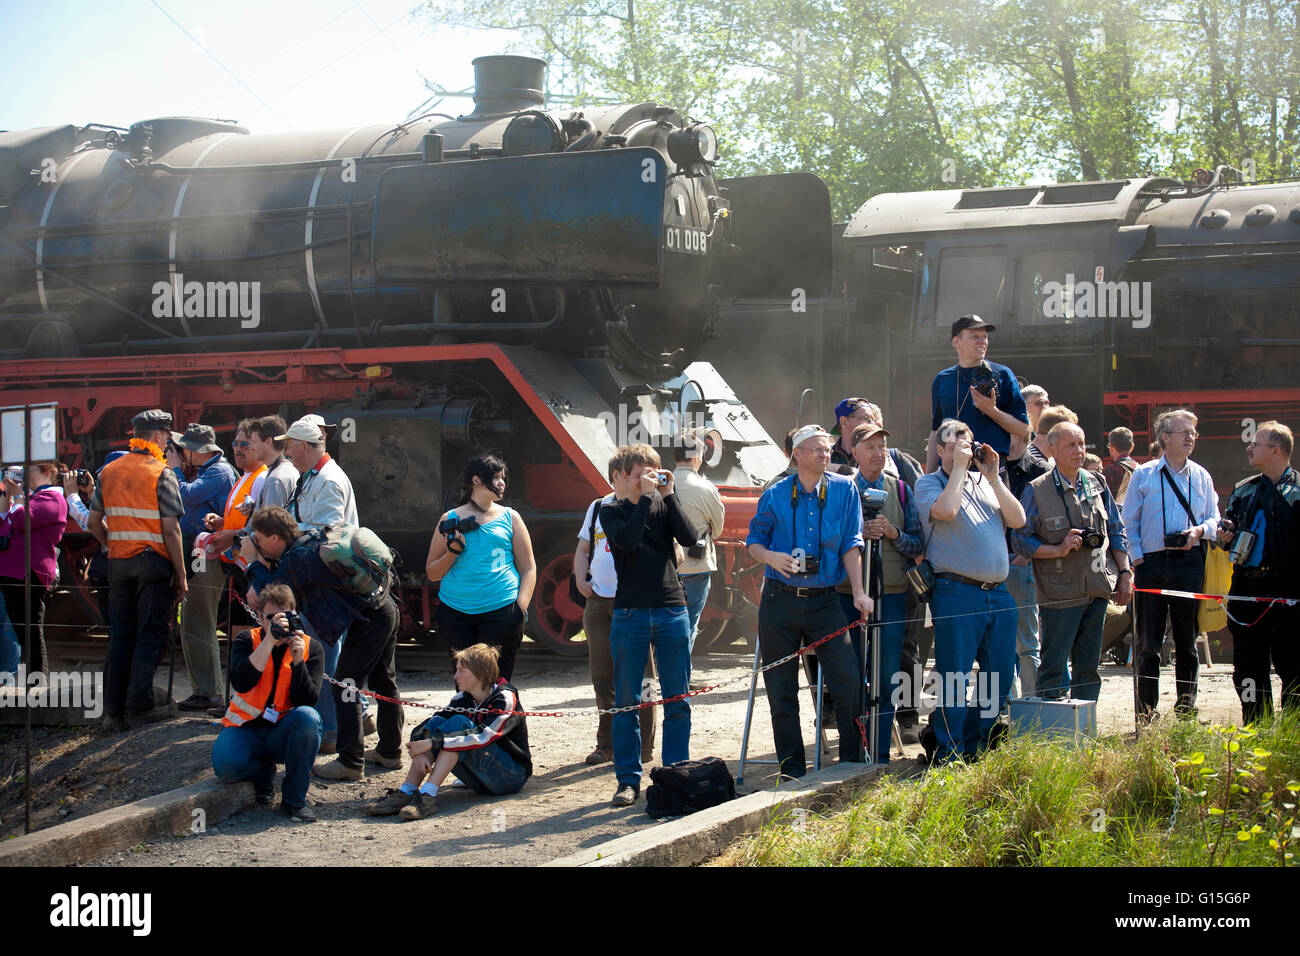 DEU, Germnay, région de la Ruhr, Bochum, musée du chemin de fer dans le quartier ancien, Dahlhausen locomotives à vapeur, les visiteurs prennent des photos de t Banque D'Images